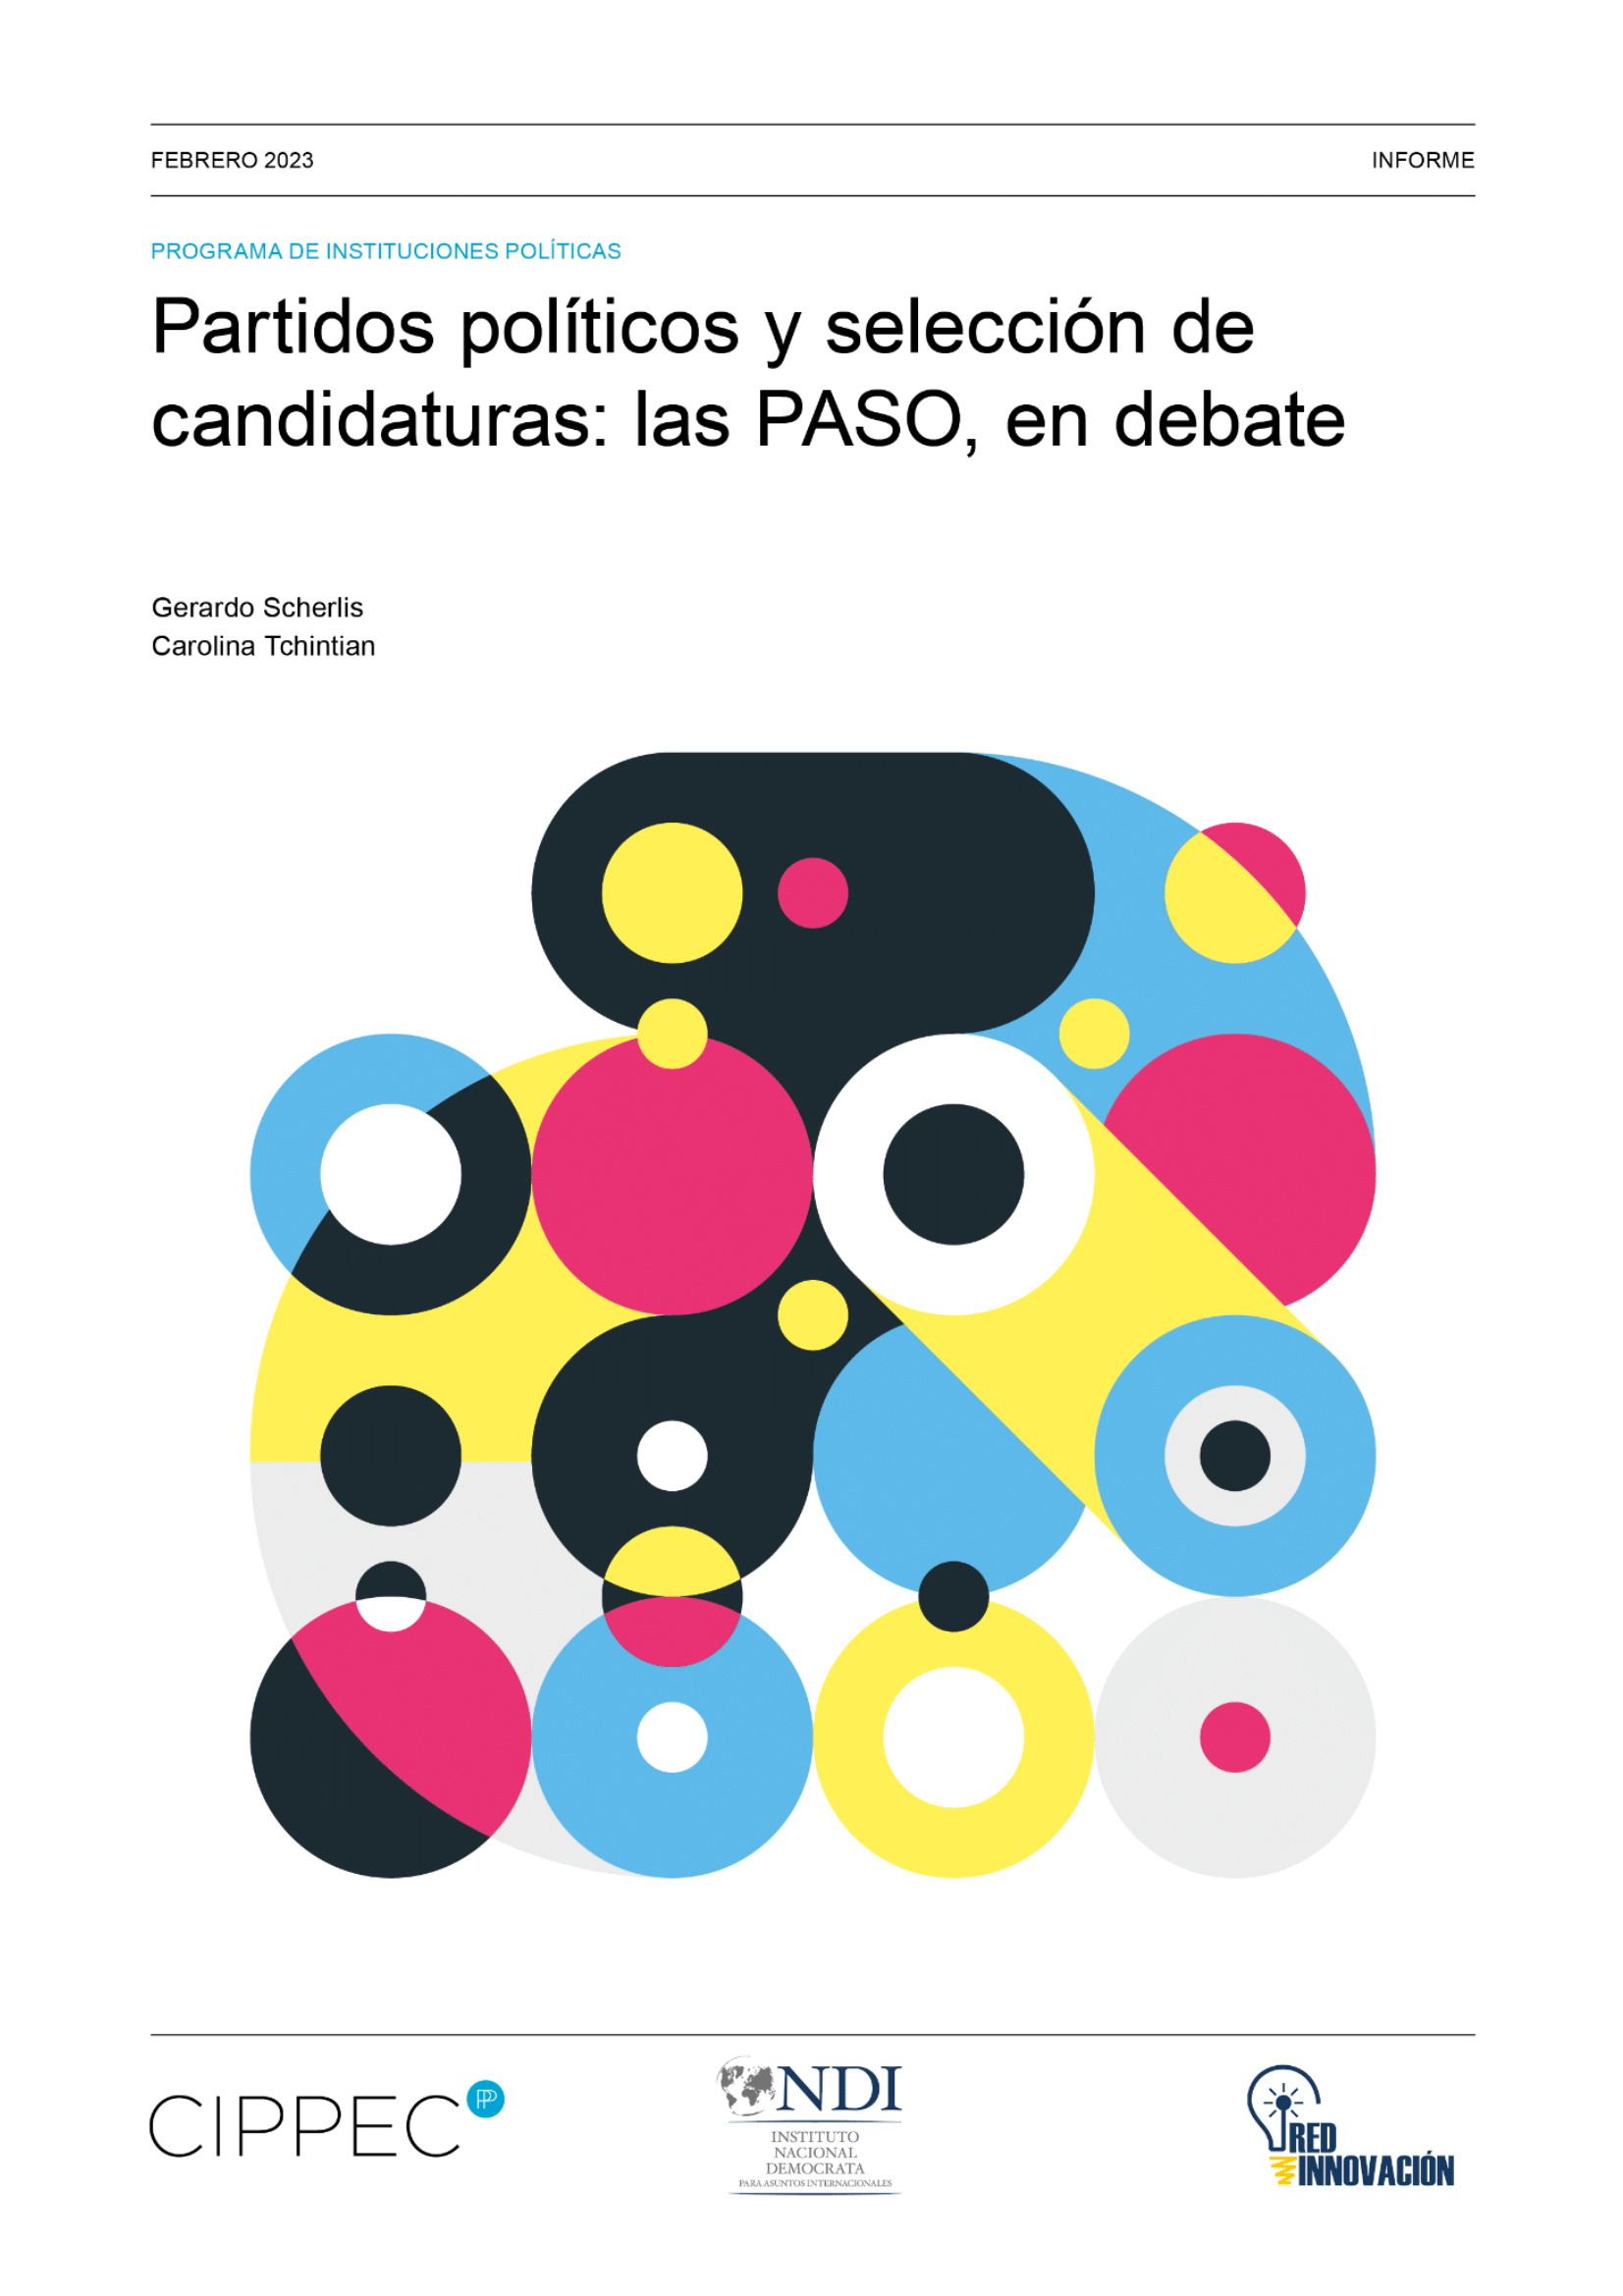 Partidos políticos y selección de candidaturas: Las PASO en debate